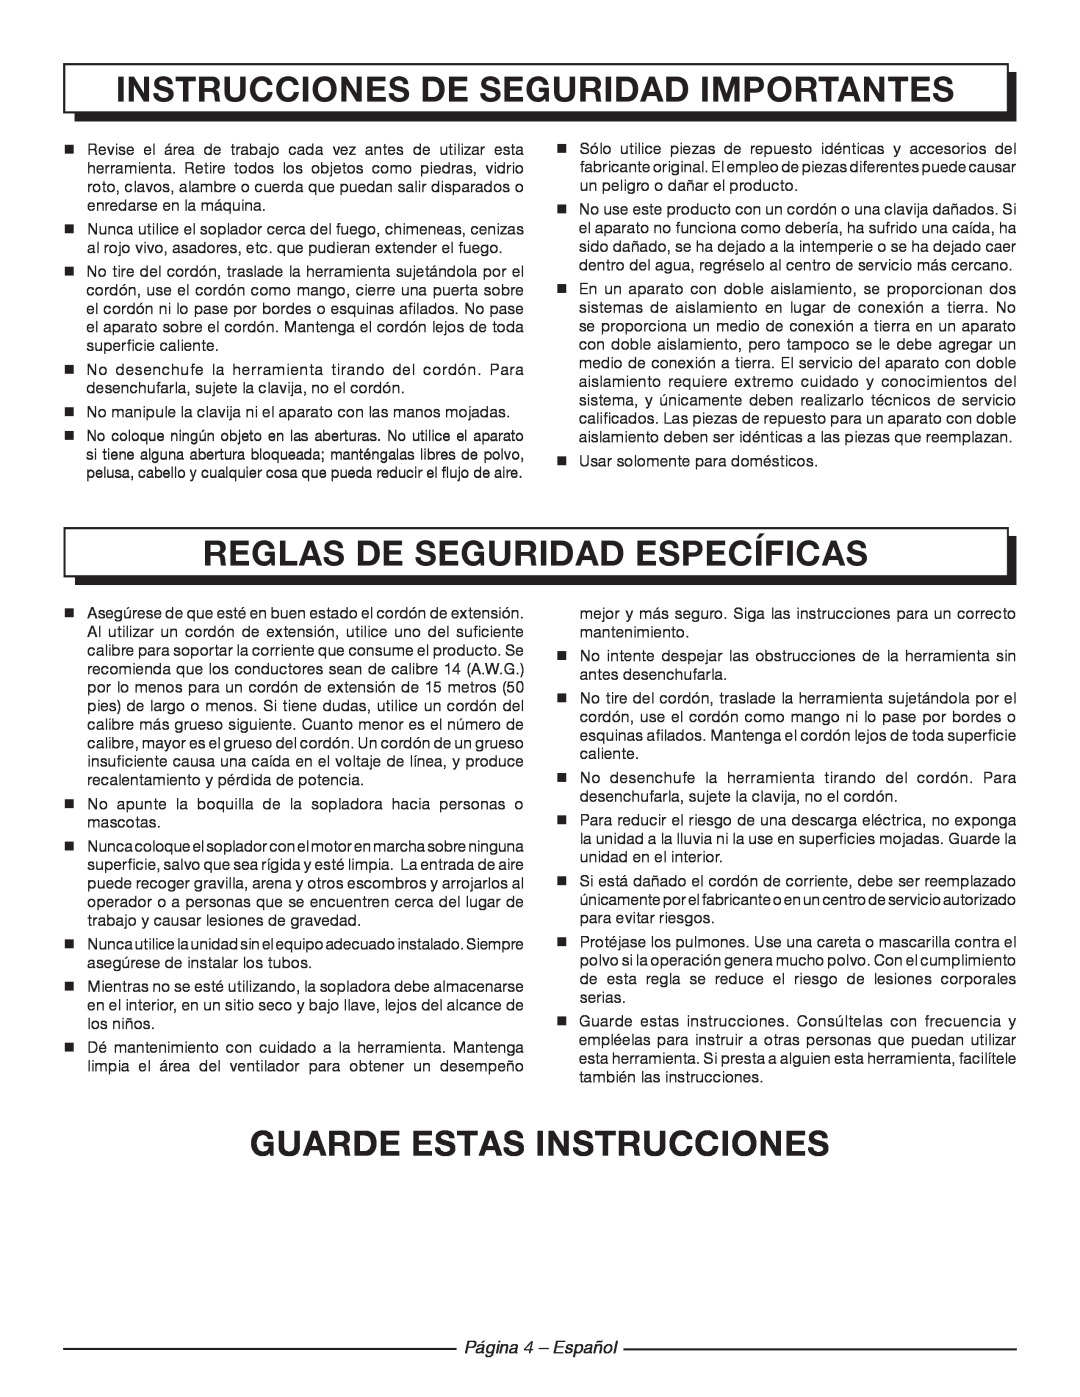 Homelite UT42100 manuel dutilisation Reglas De Seguridad Específicas, Guarde estas instrucciones, Página 4 - Español 